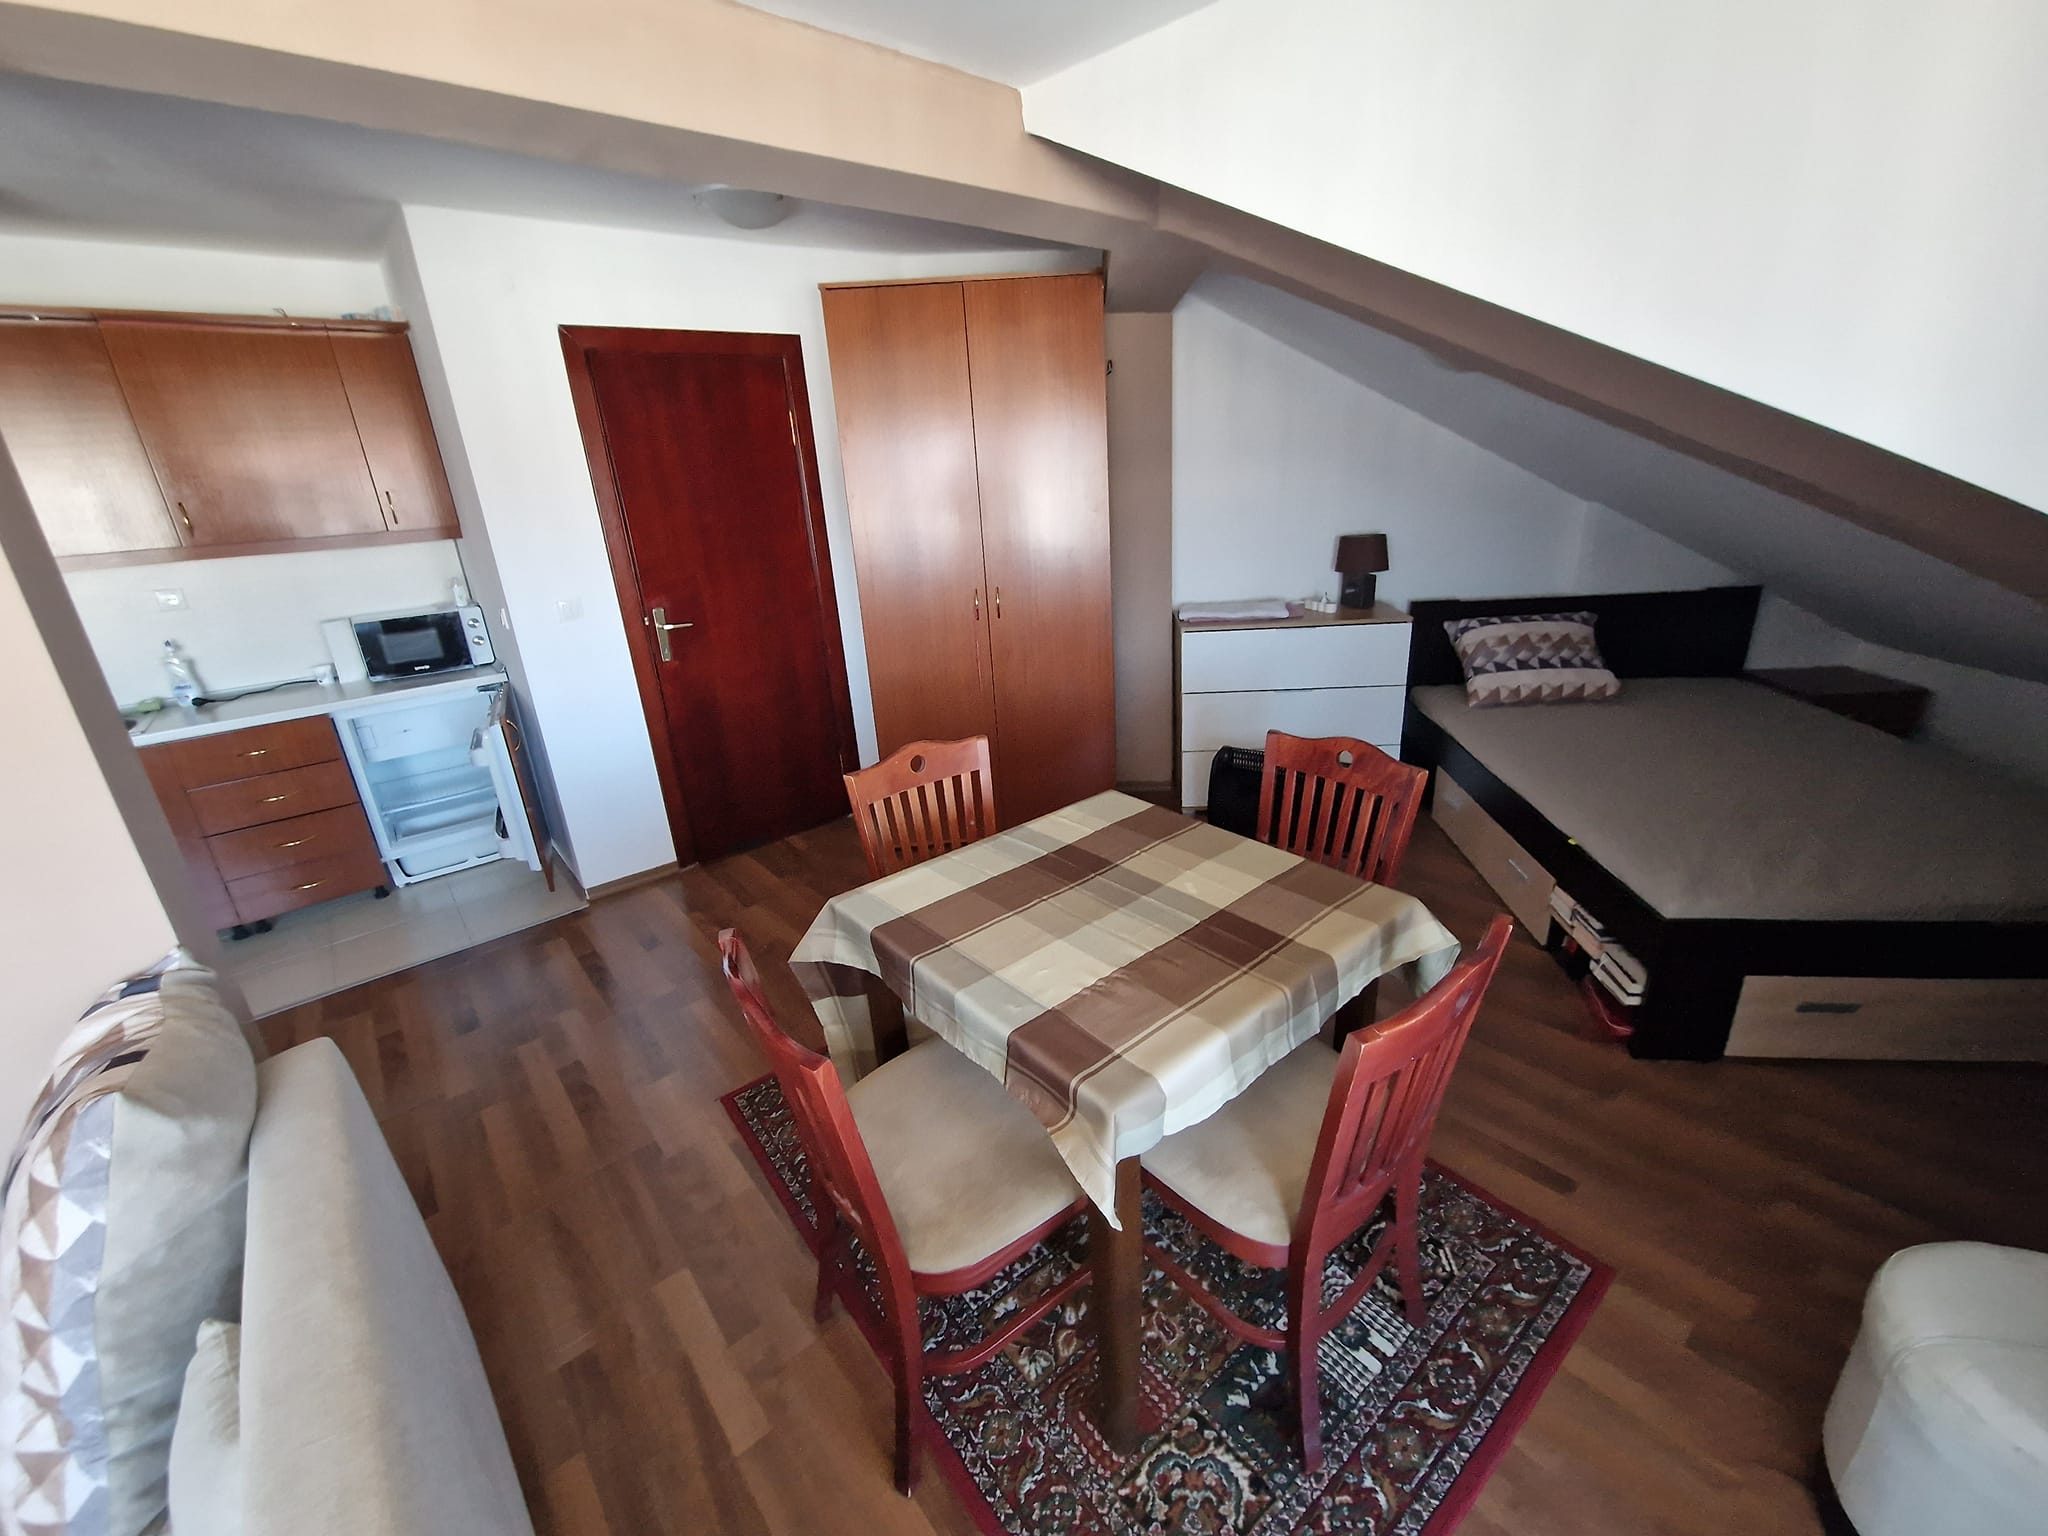 Тристаен апартамент в затворен комплекс Elegant LUX с фронтална гледка към Пирин планина